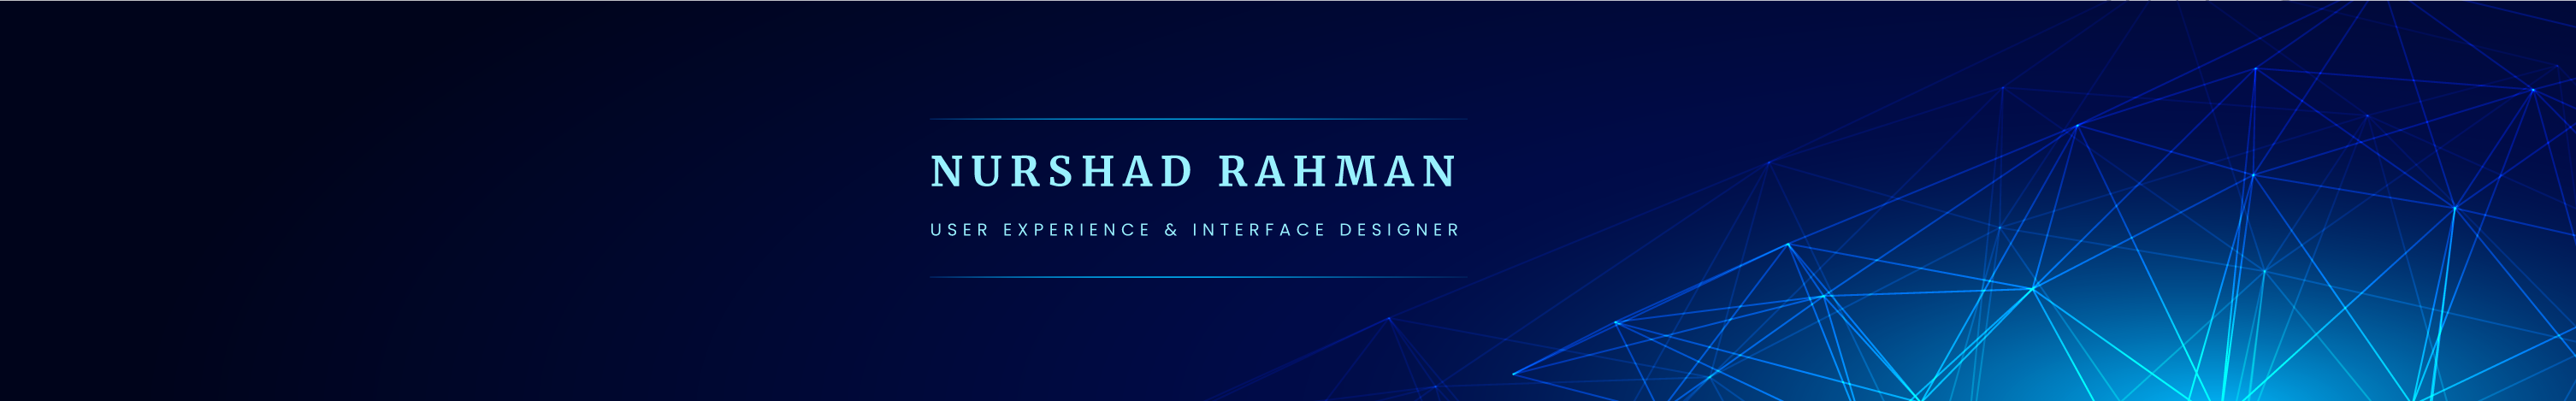 Nurshad Rahman's profile banner